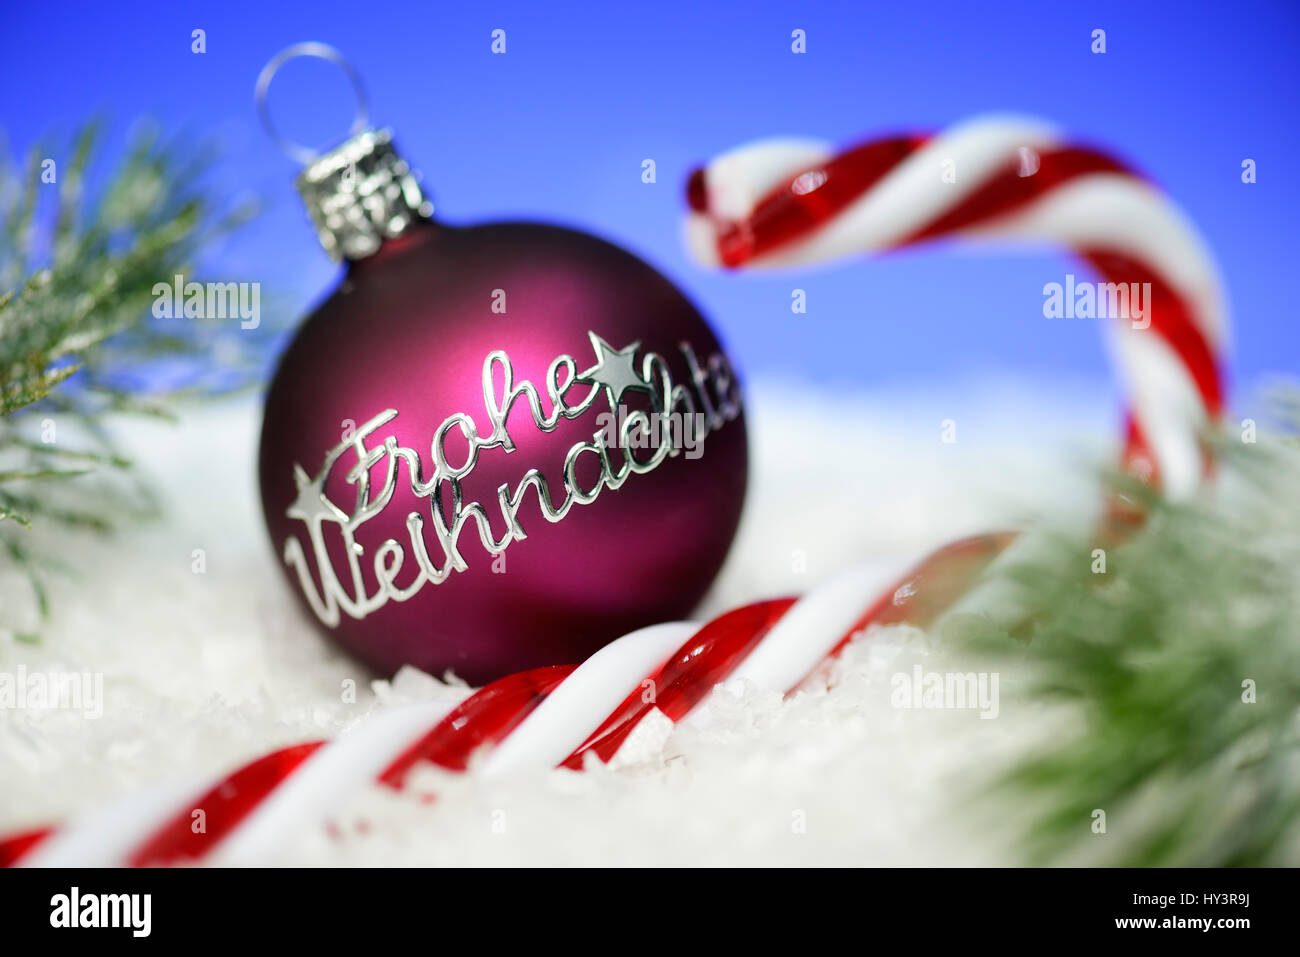 Weihnachtskugel mit Label froh Weihnachten und Stick von Rock, Weihnachten, Weihnachtskugel Mit Aufschrift Frohe Wohnaccesoires Und Zuckerstange, Wohnaccesoires Stockfoto